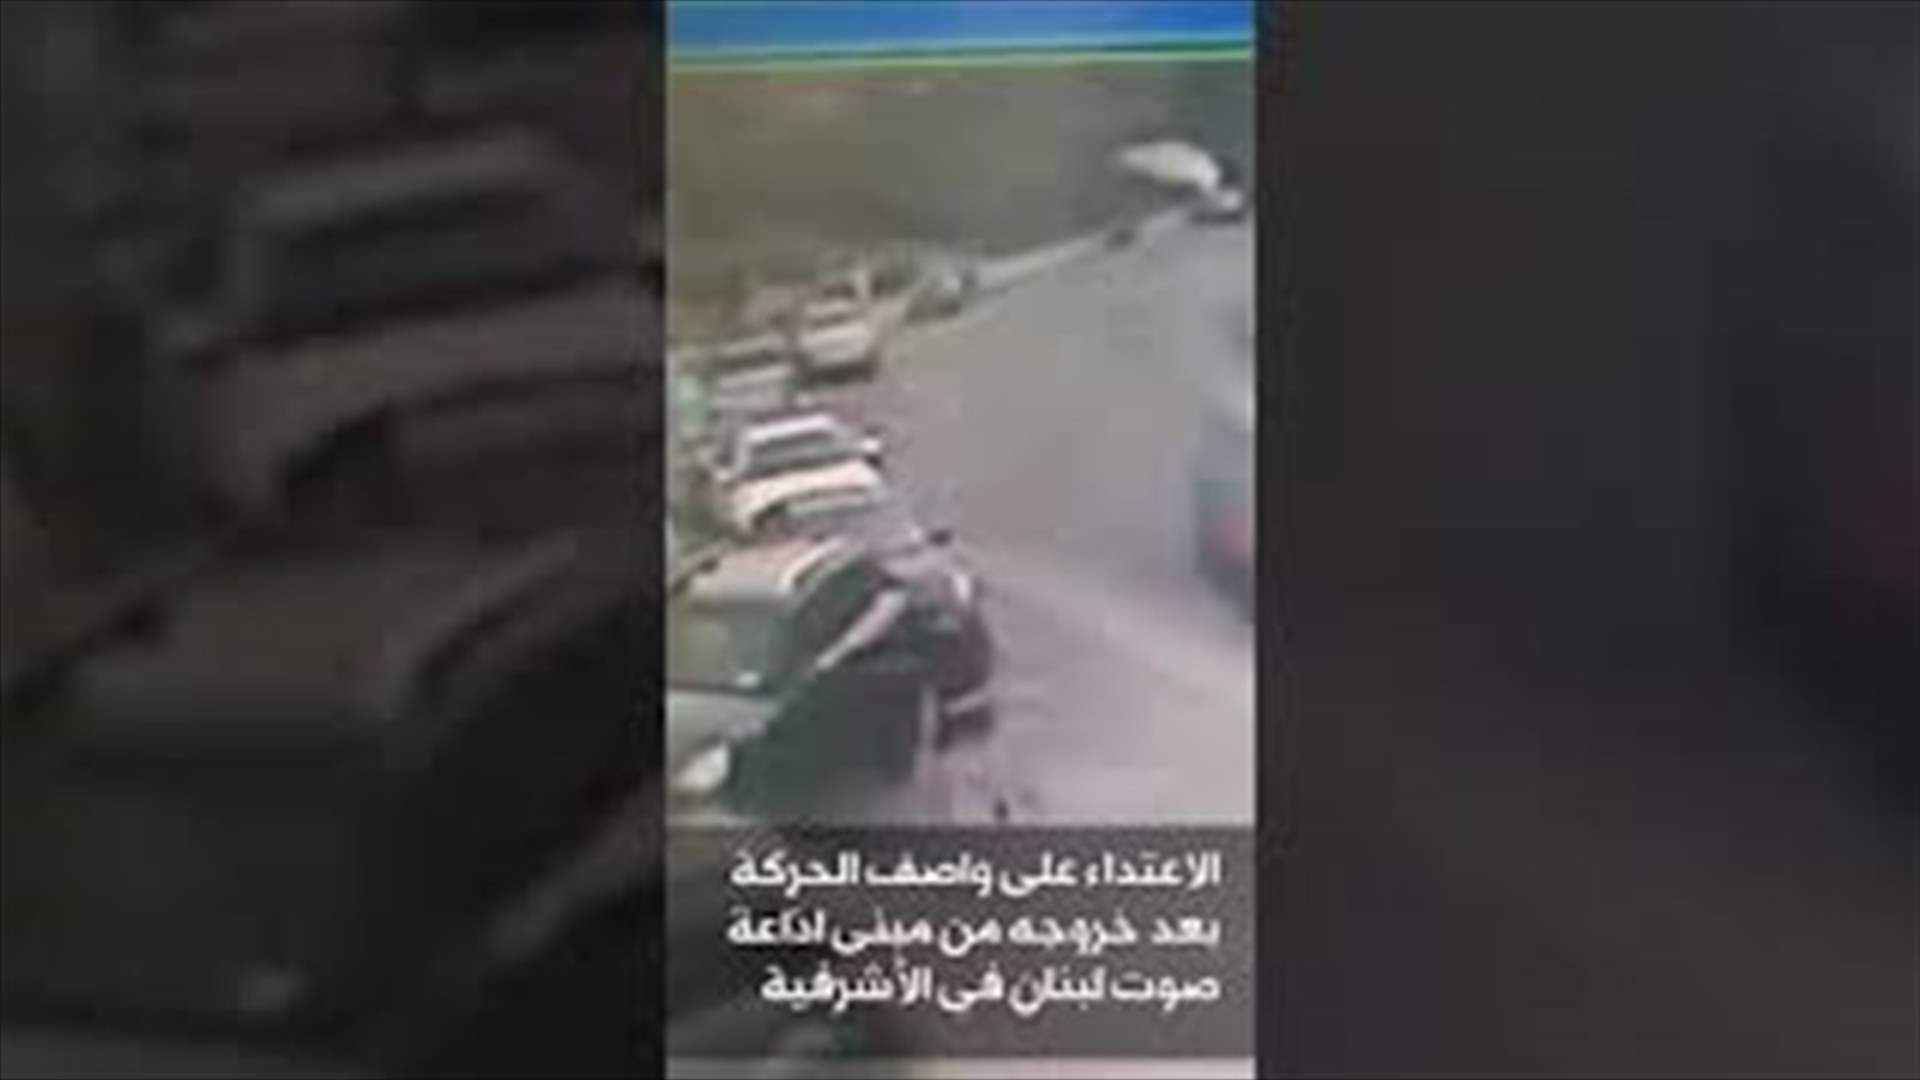 فيديو يوثّق لحظة الاعتداء على المحامي واصف الحركة بالامس